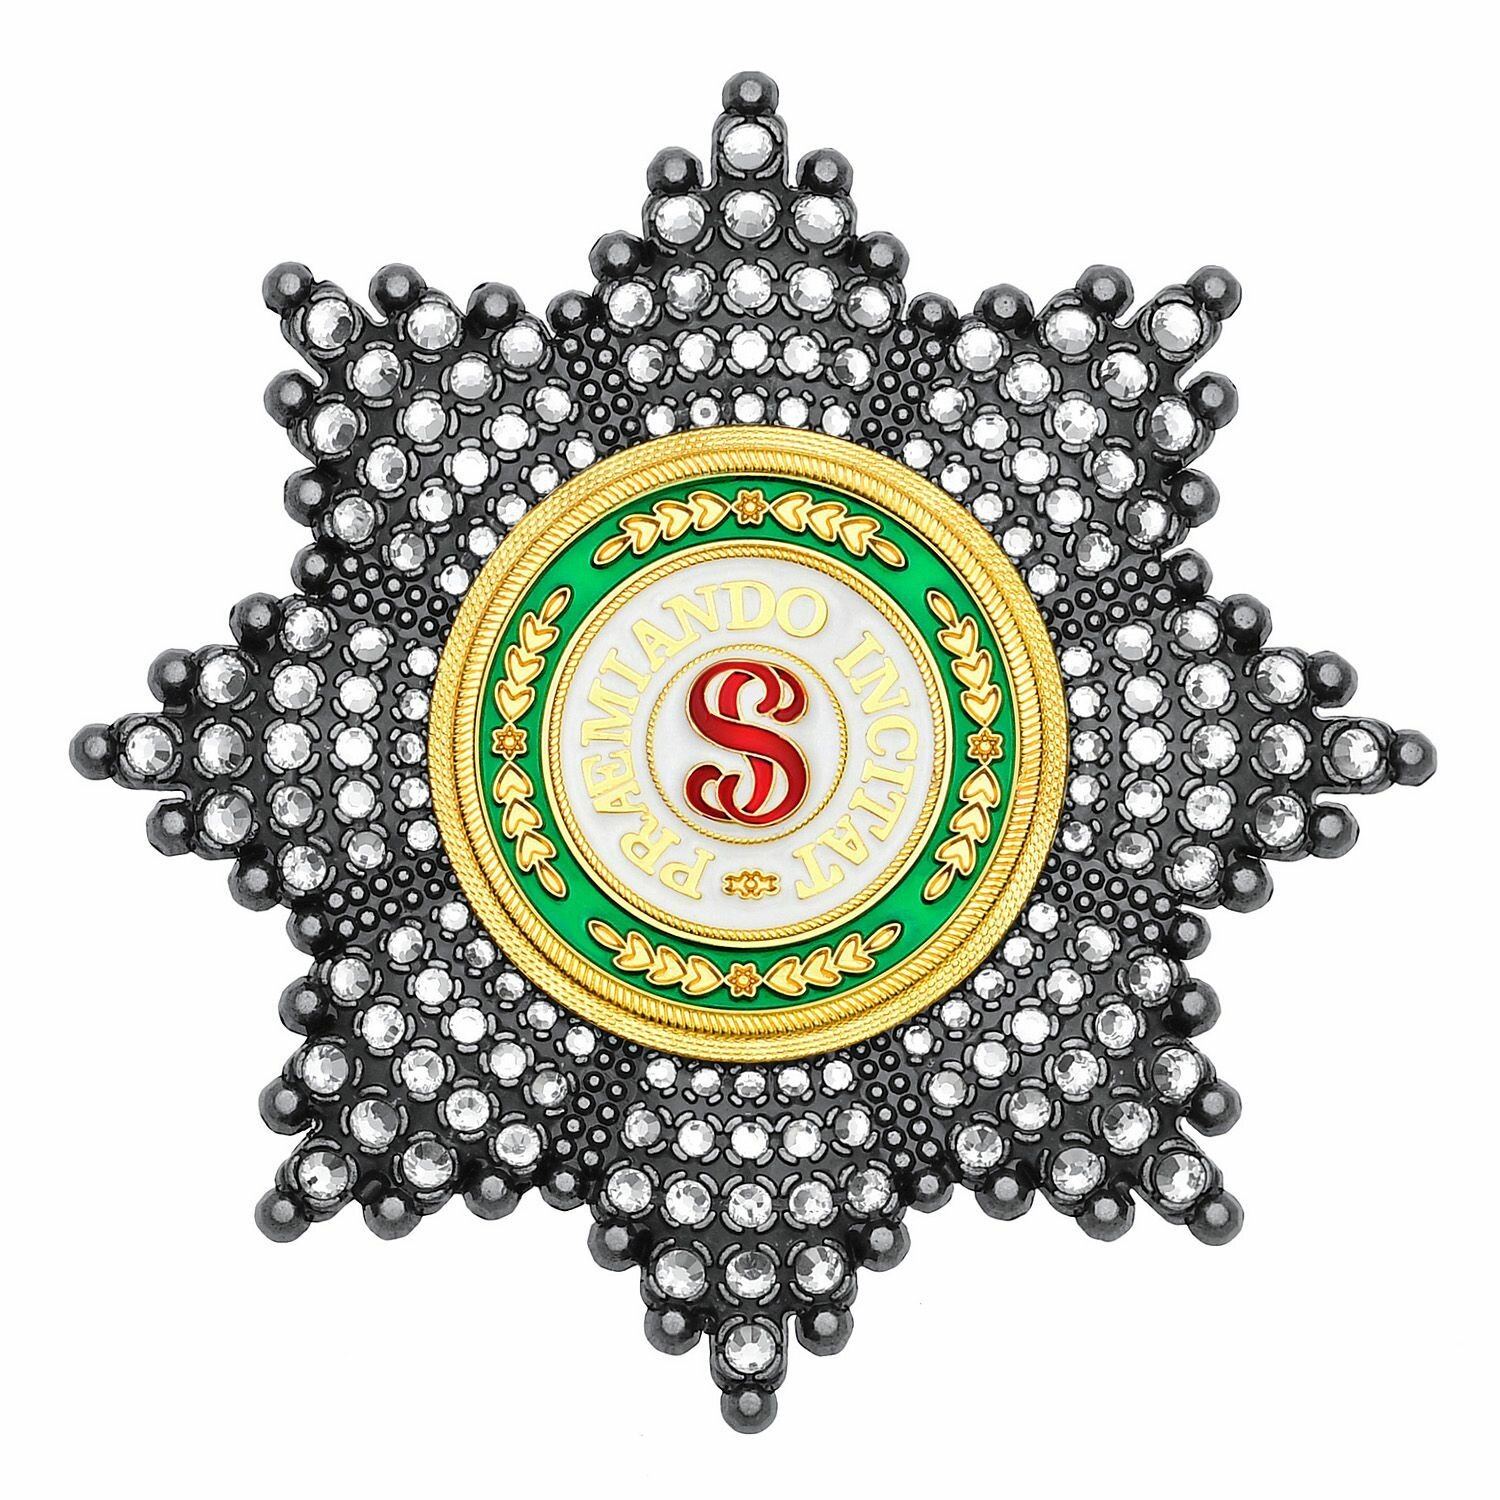 Звезда ордена Святого Станислава со стразами, полноразмерный муляж Российской империи